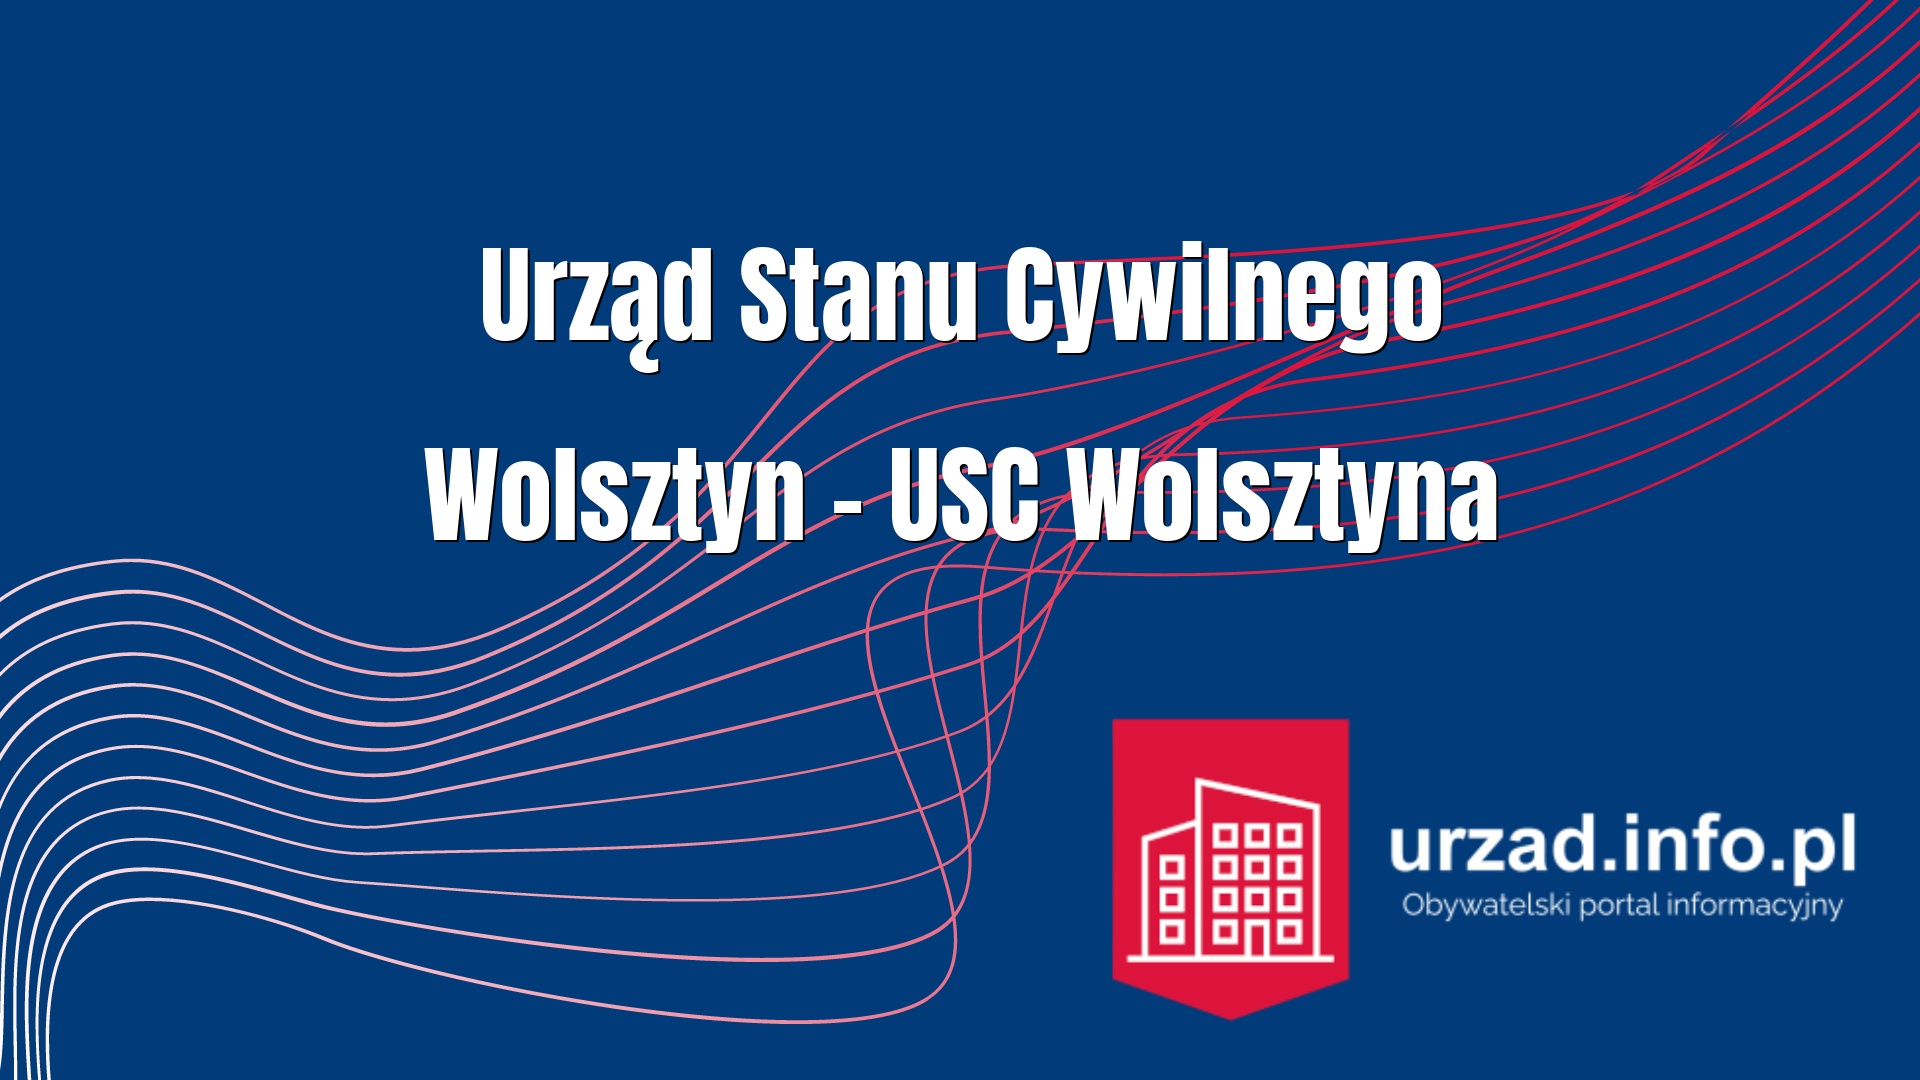 Urząd Stanu Cywilnego Wolsztyn – USC Wolsztyna